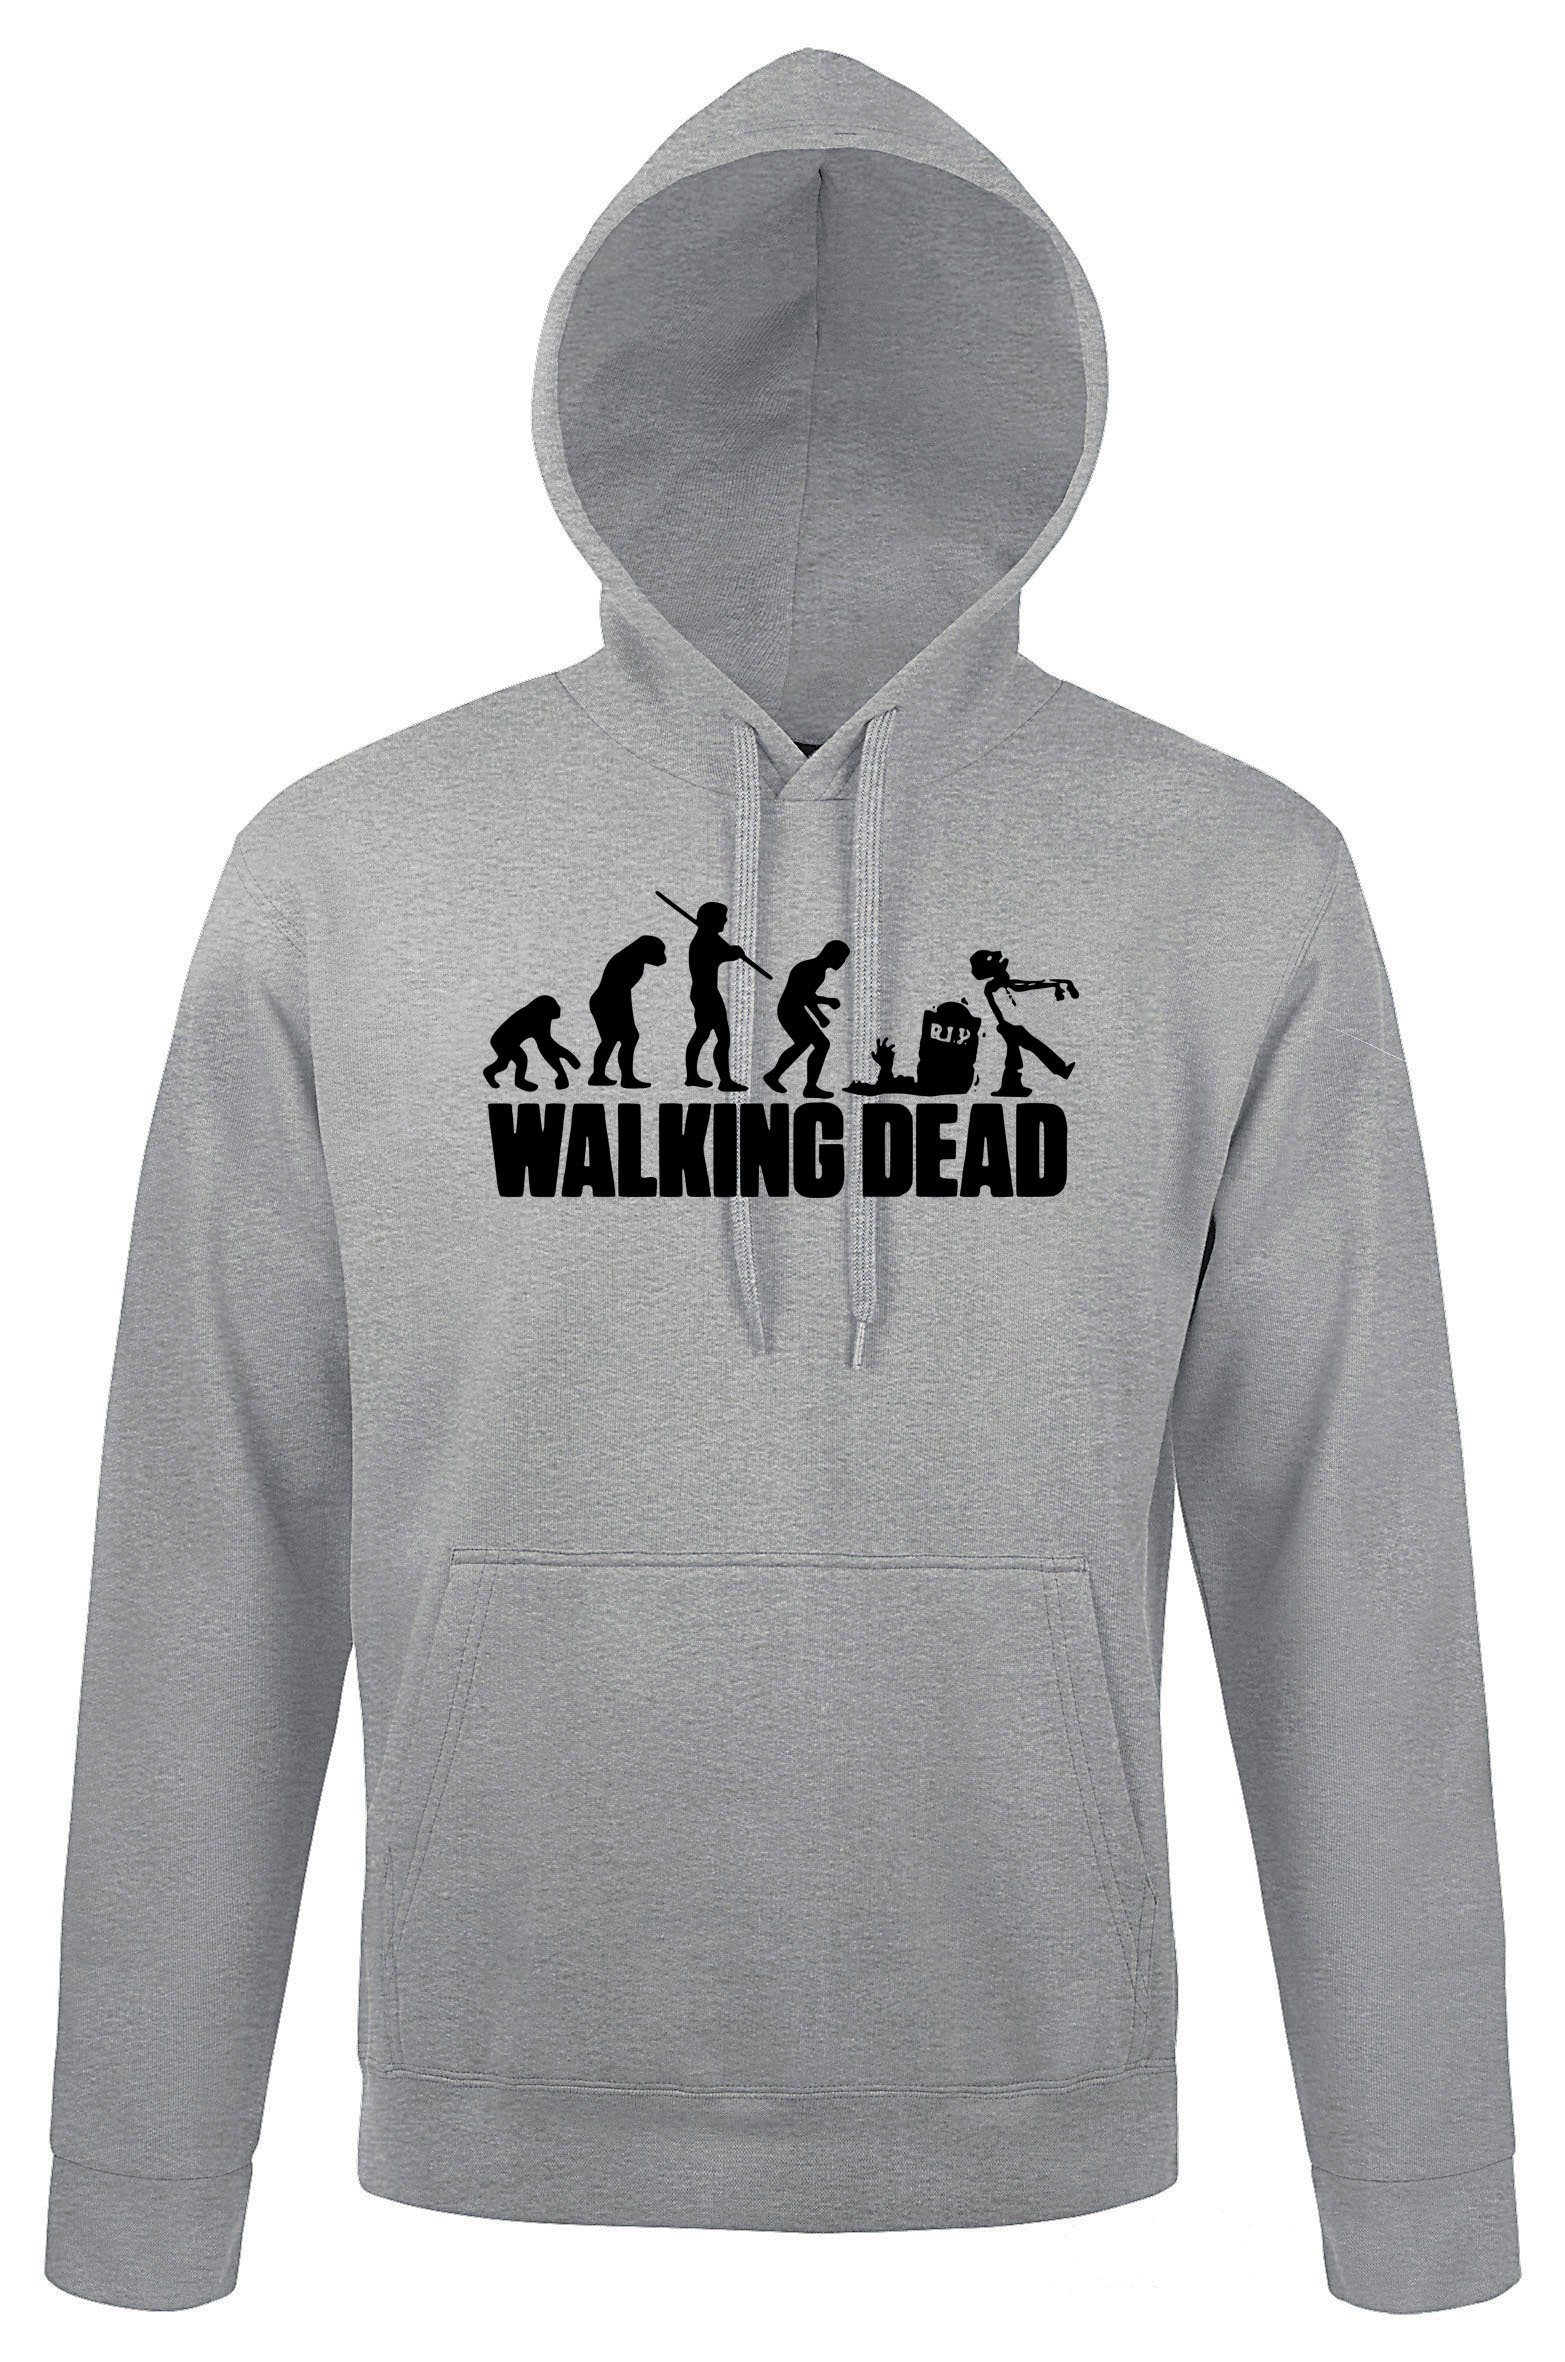 Dead mit Walking Designz trendigem Hoodie Kapuzenpullover Herren Youth Pullover Zombie Motiv Grau Serien